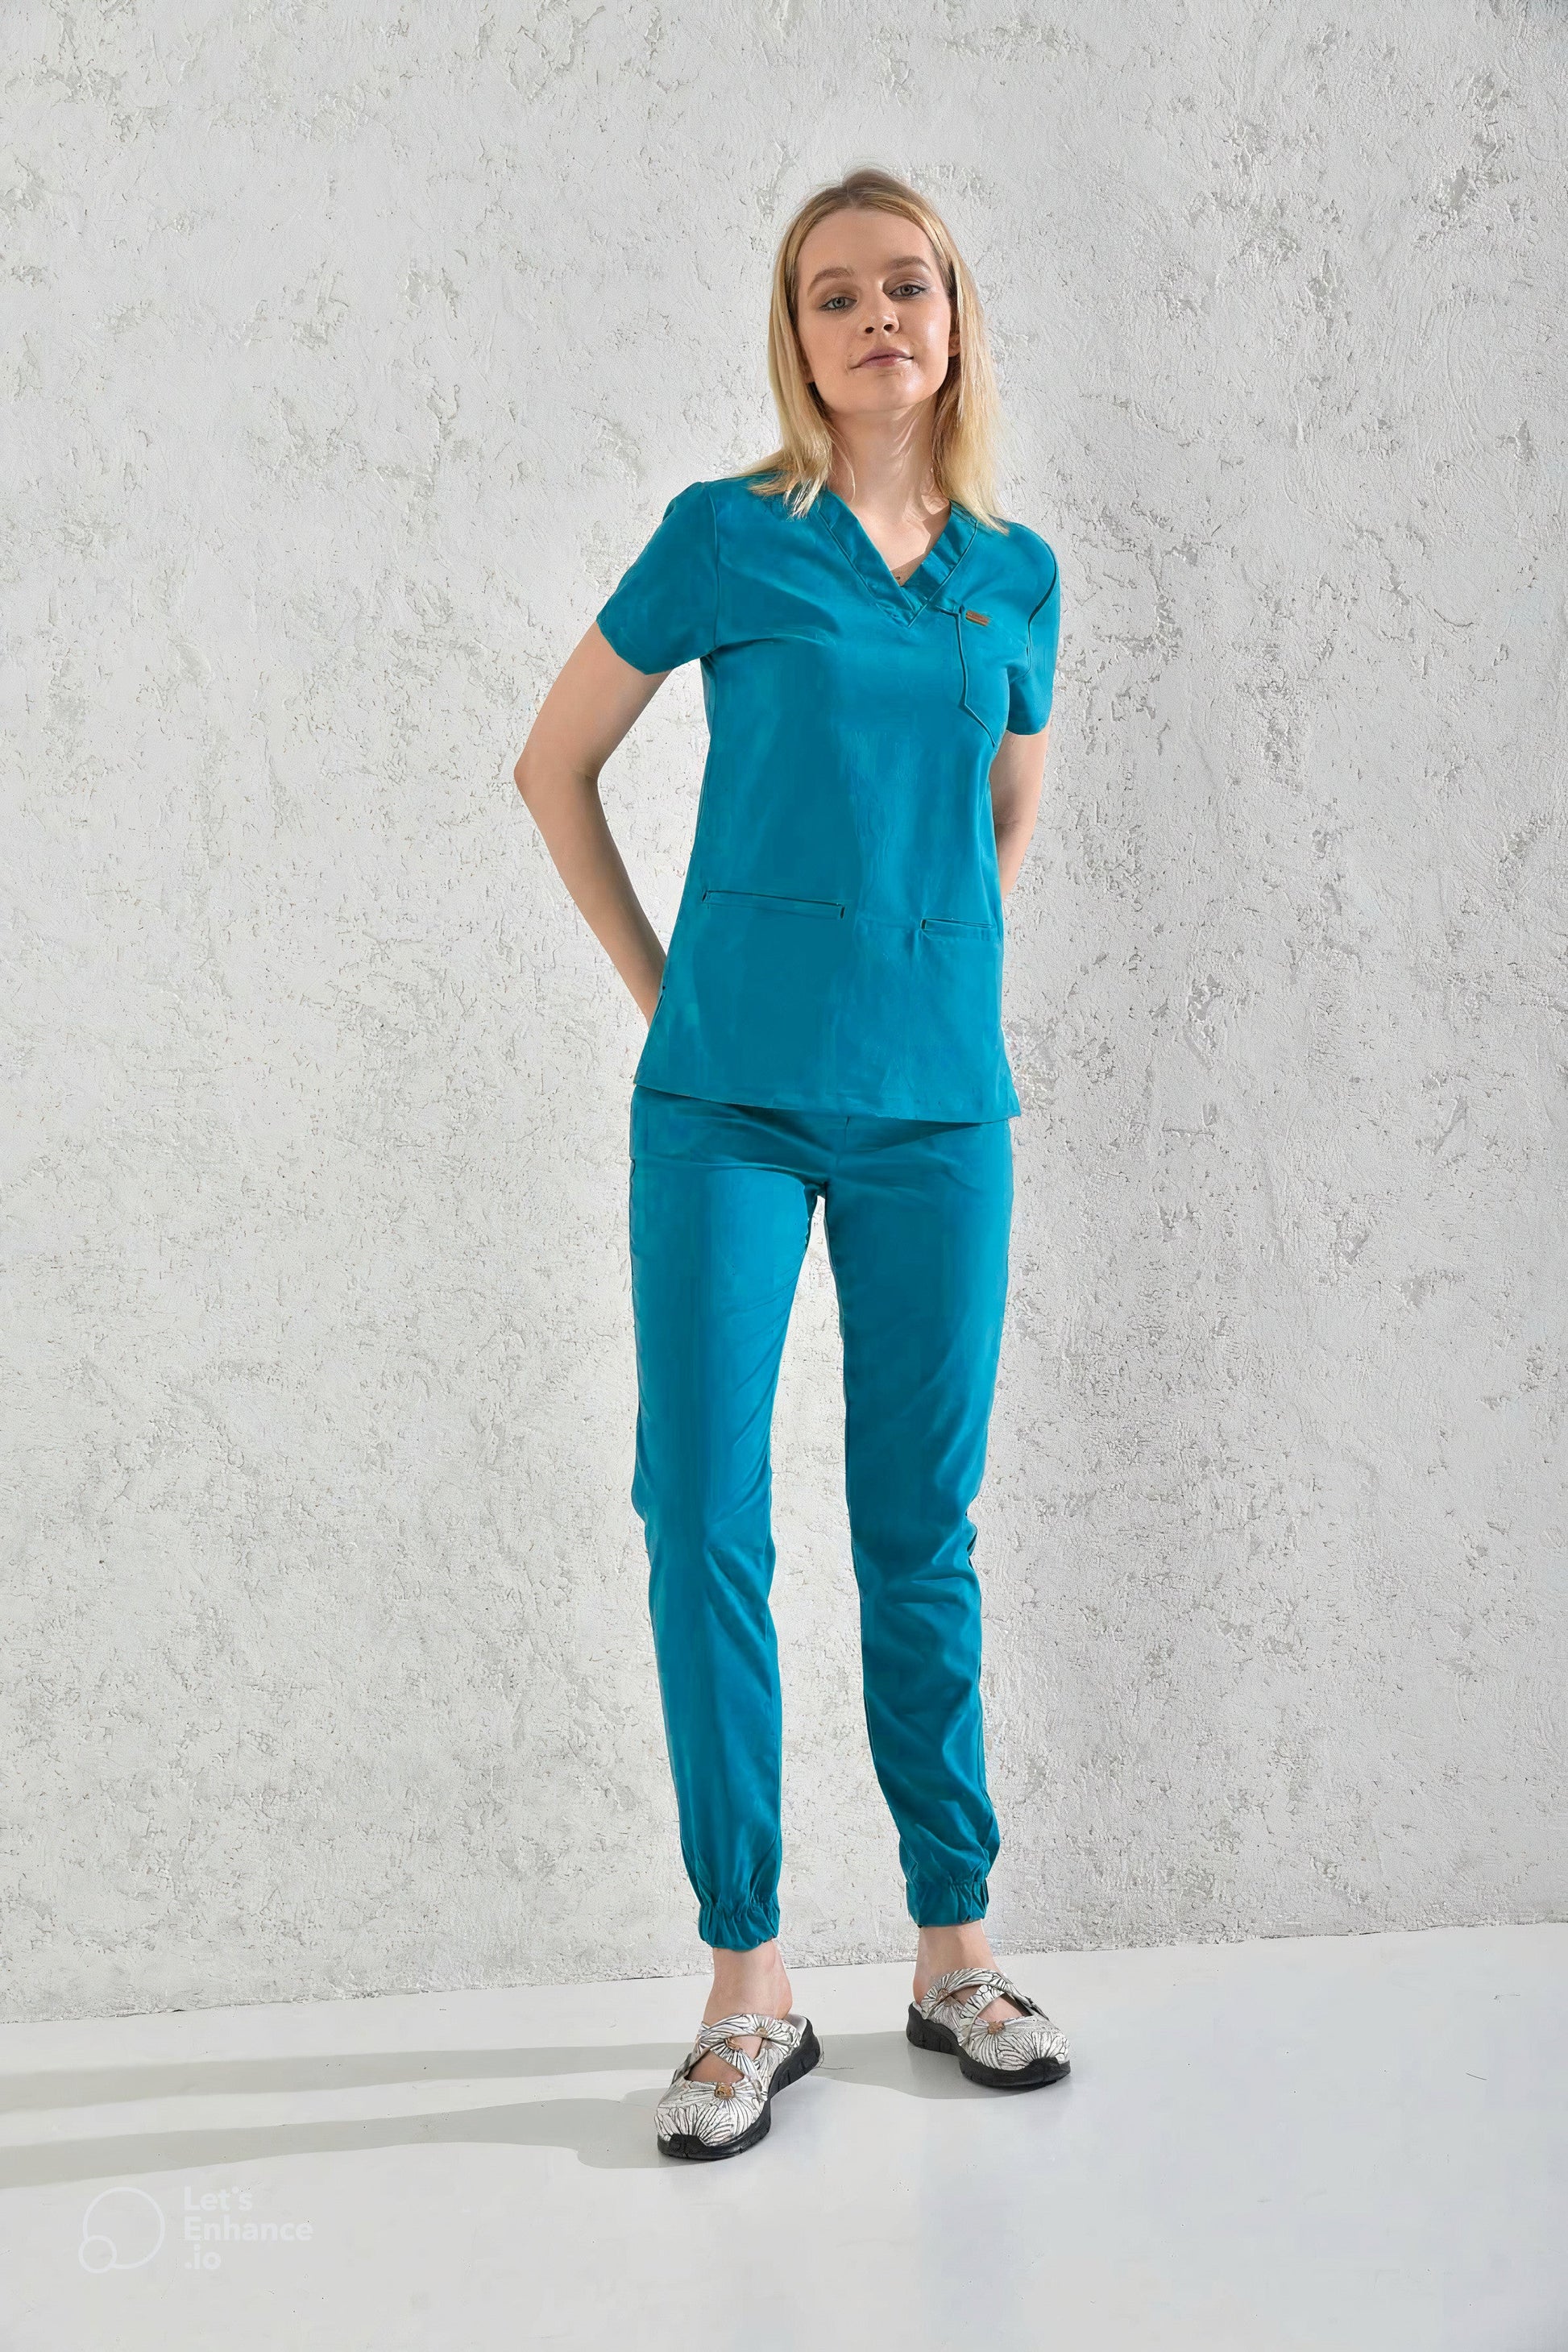 Femme portant un pantalon médical bleu cyan sous la tenue médicale Slimfit